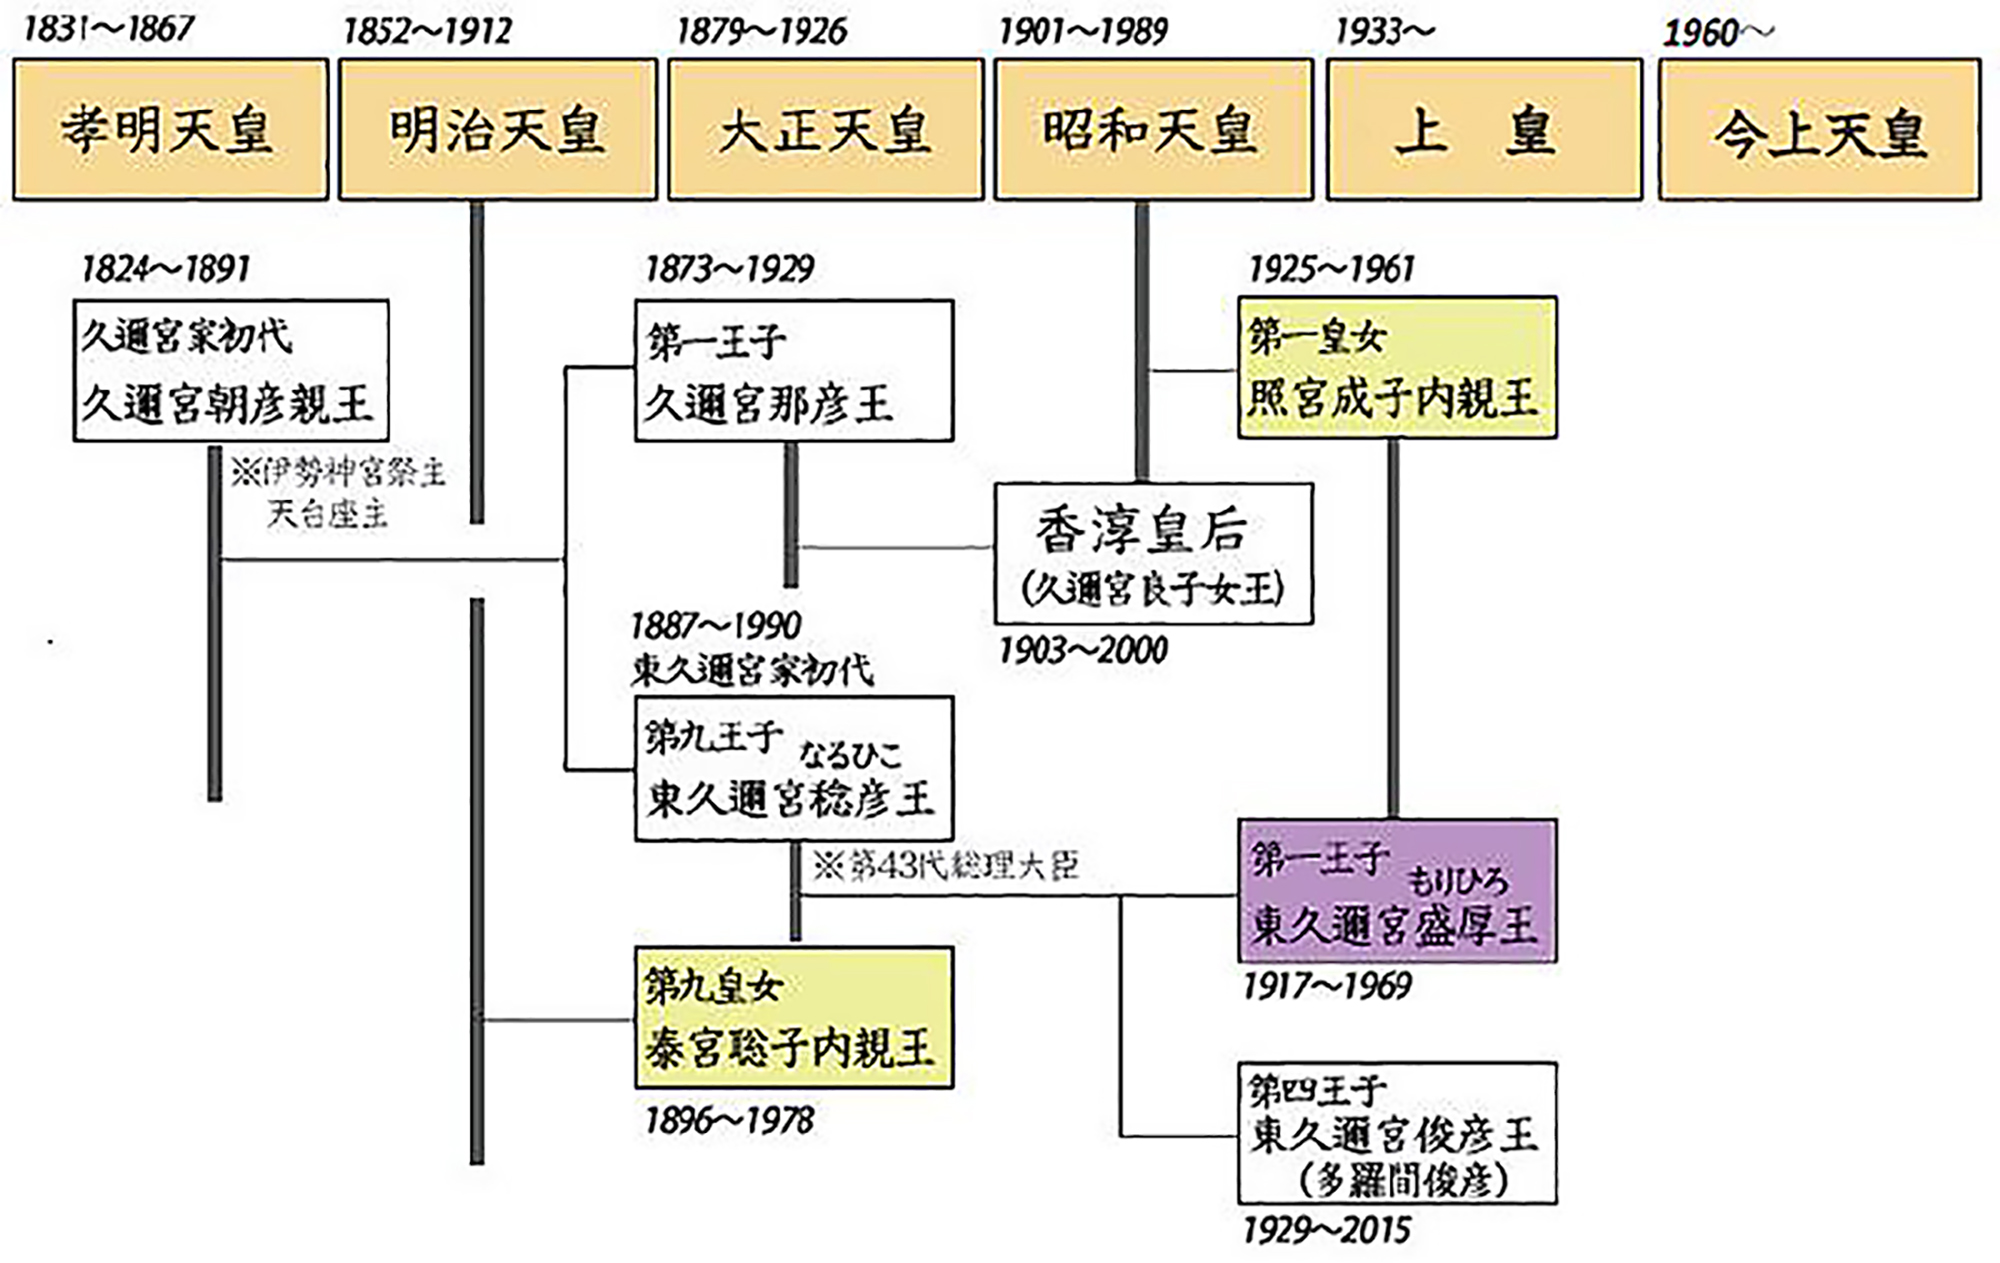 東久邇宮家家系図